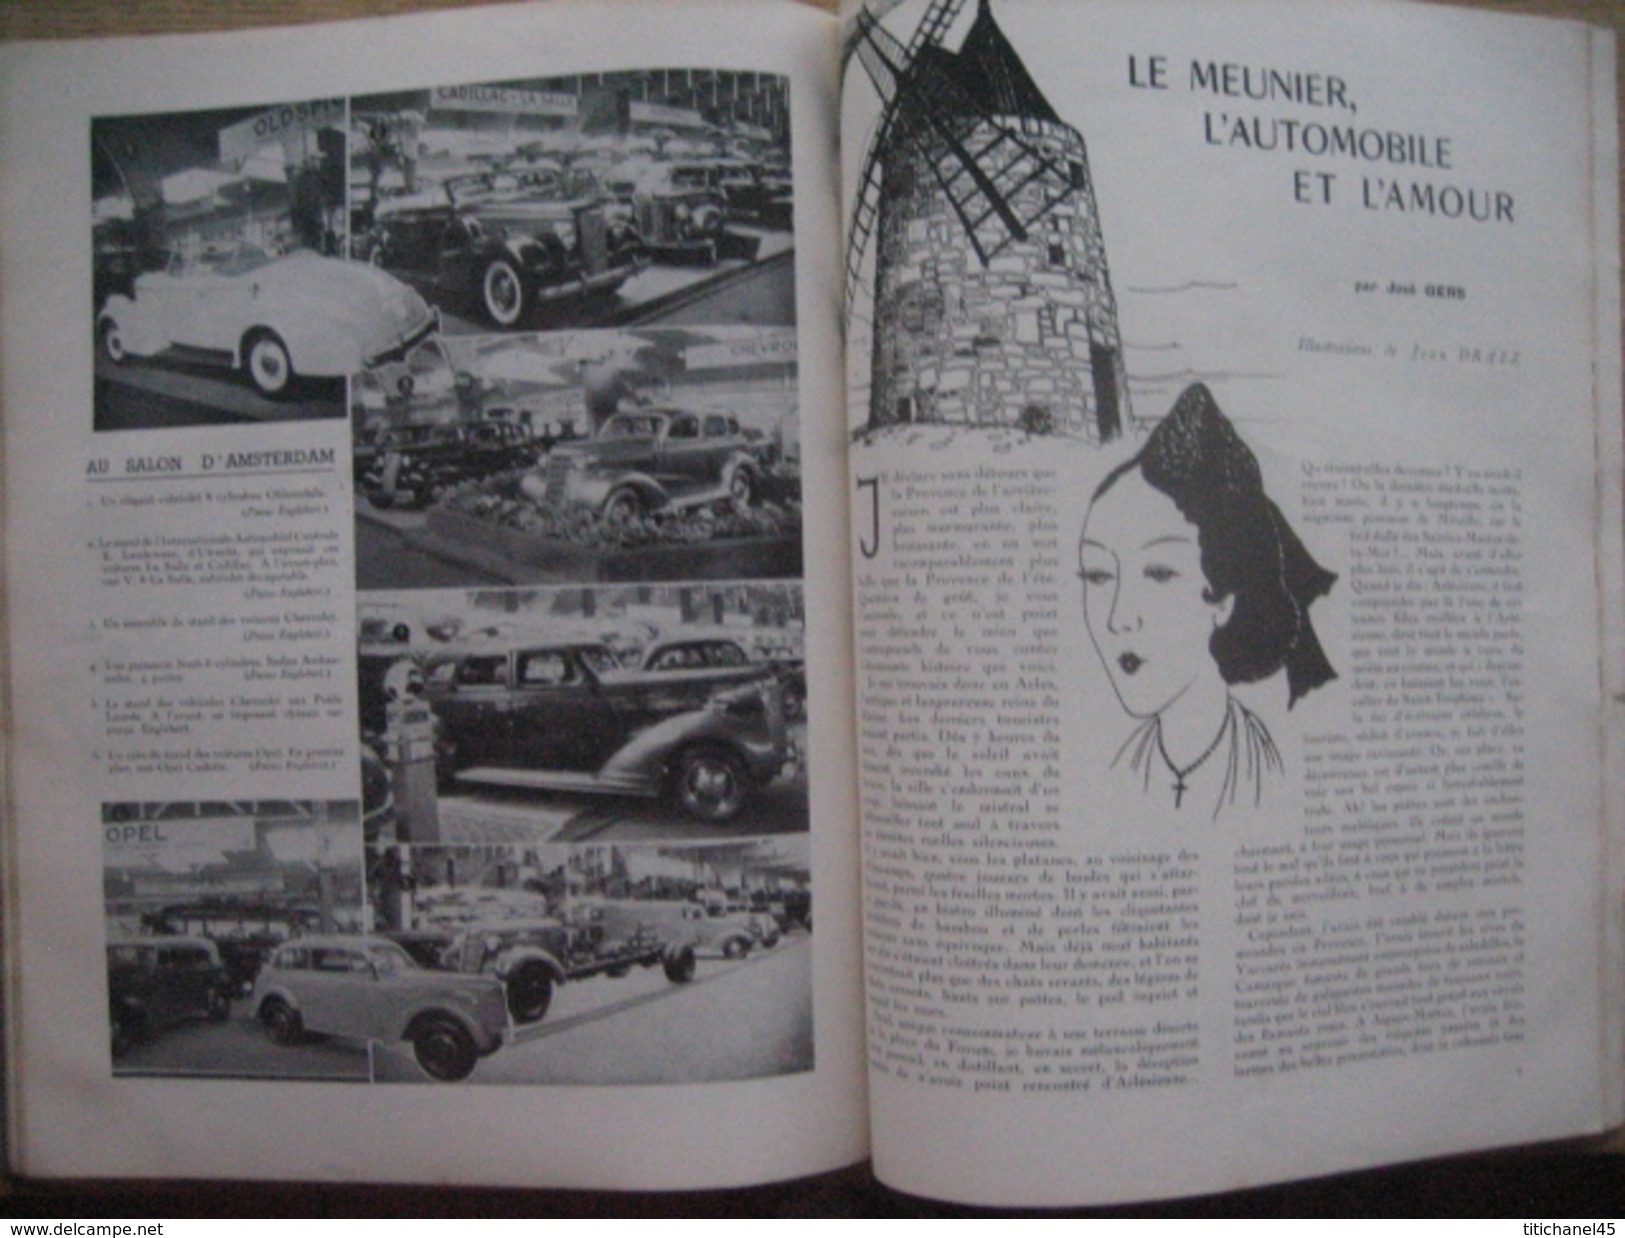 ENGLEBERT MAGAZINE N°173 JANVIER-FEVRIER 1938 - Numéro spécial SALON AUTO-MOTO-CAMION de BRUXELLES & d'AMSTERDAM